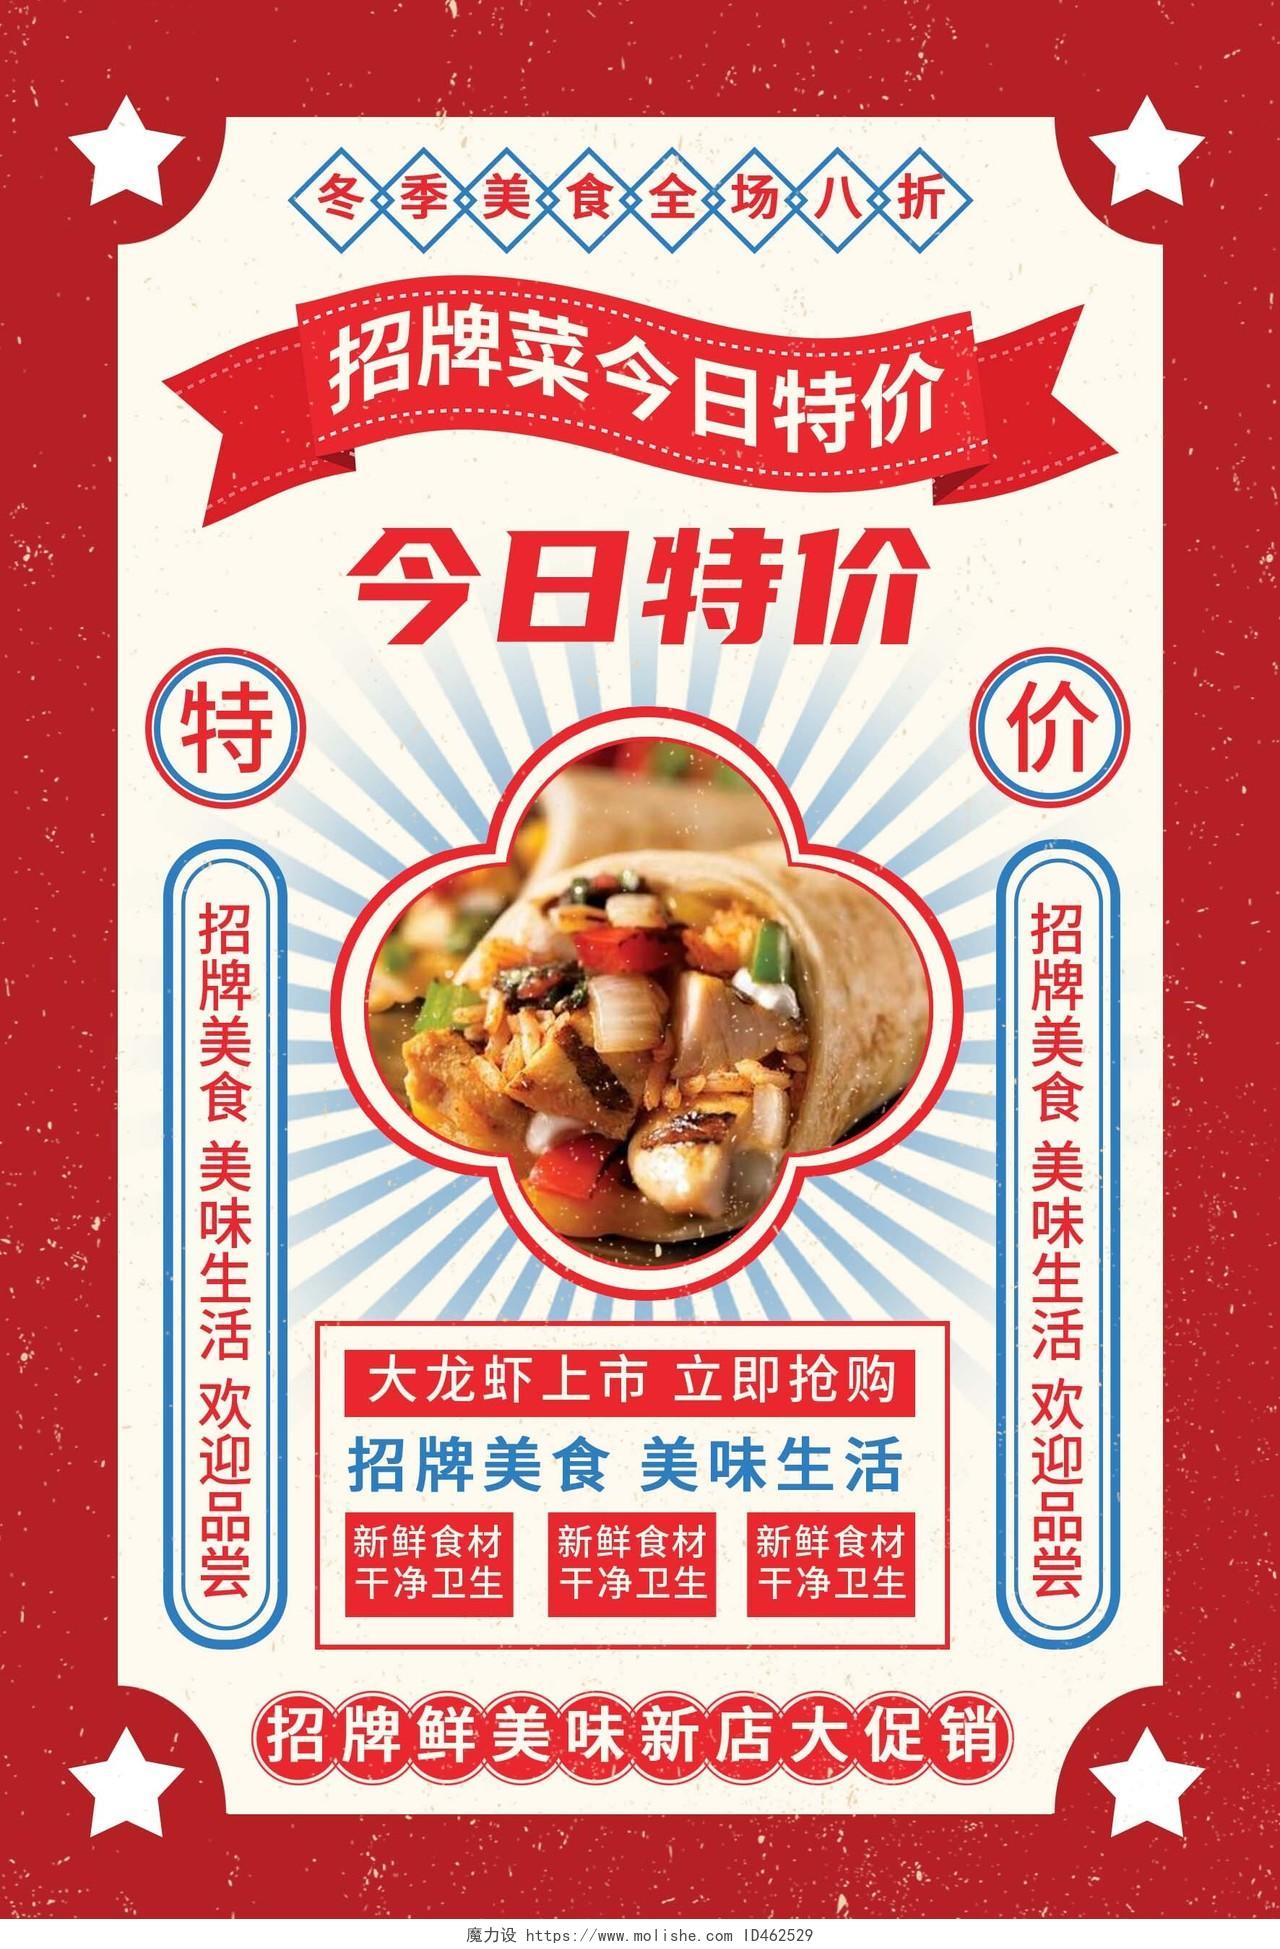 红色简约今日特价招牌菜今日特价特价菜海报